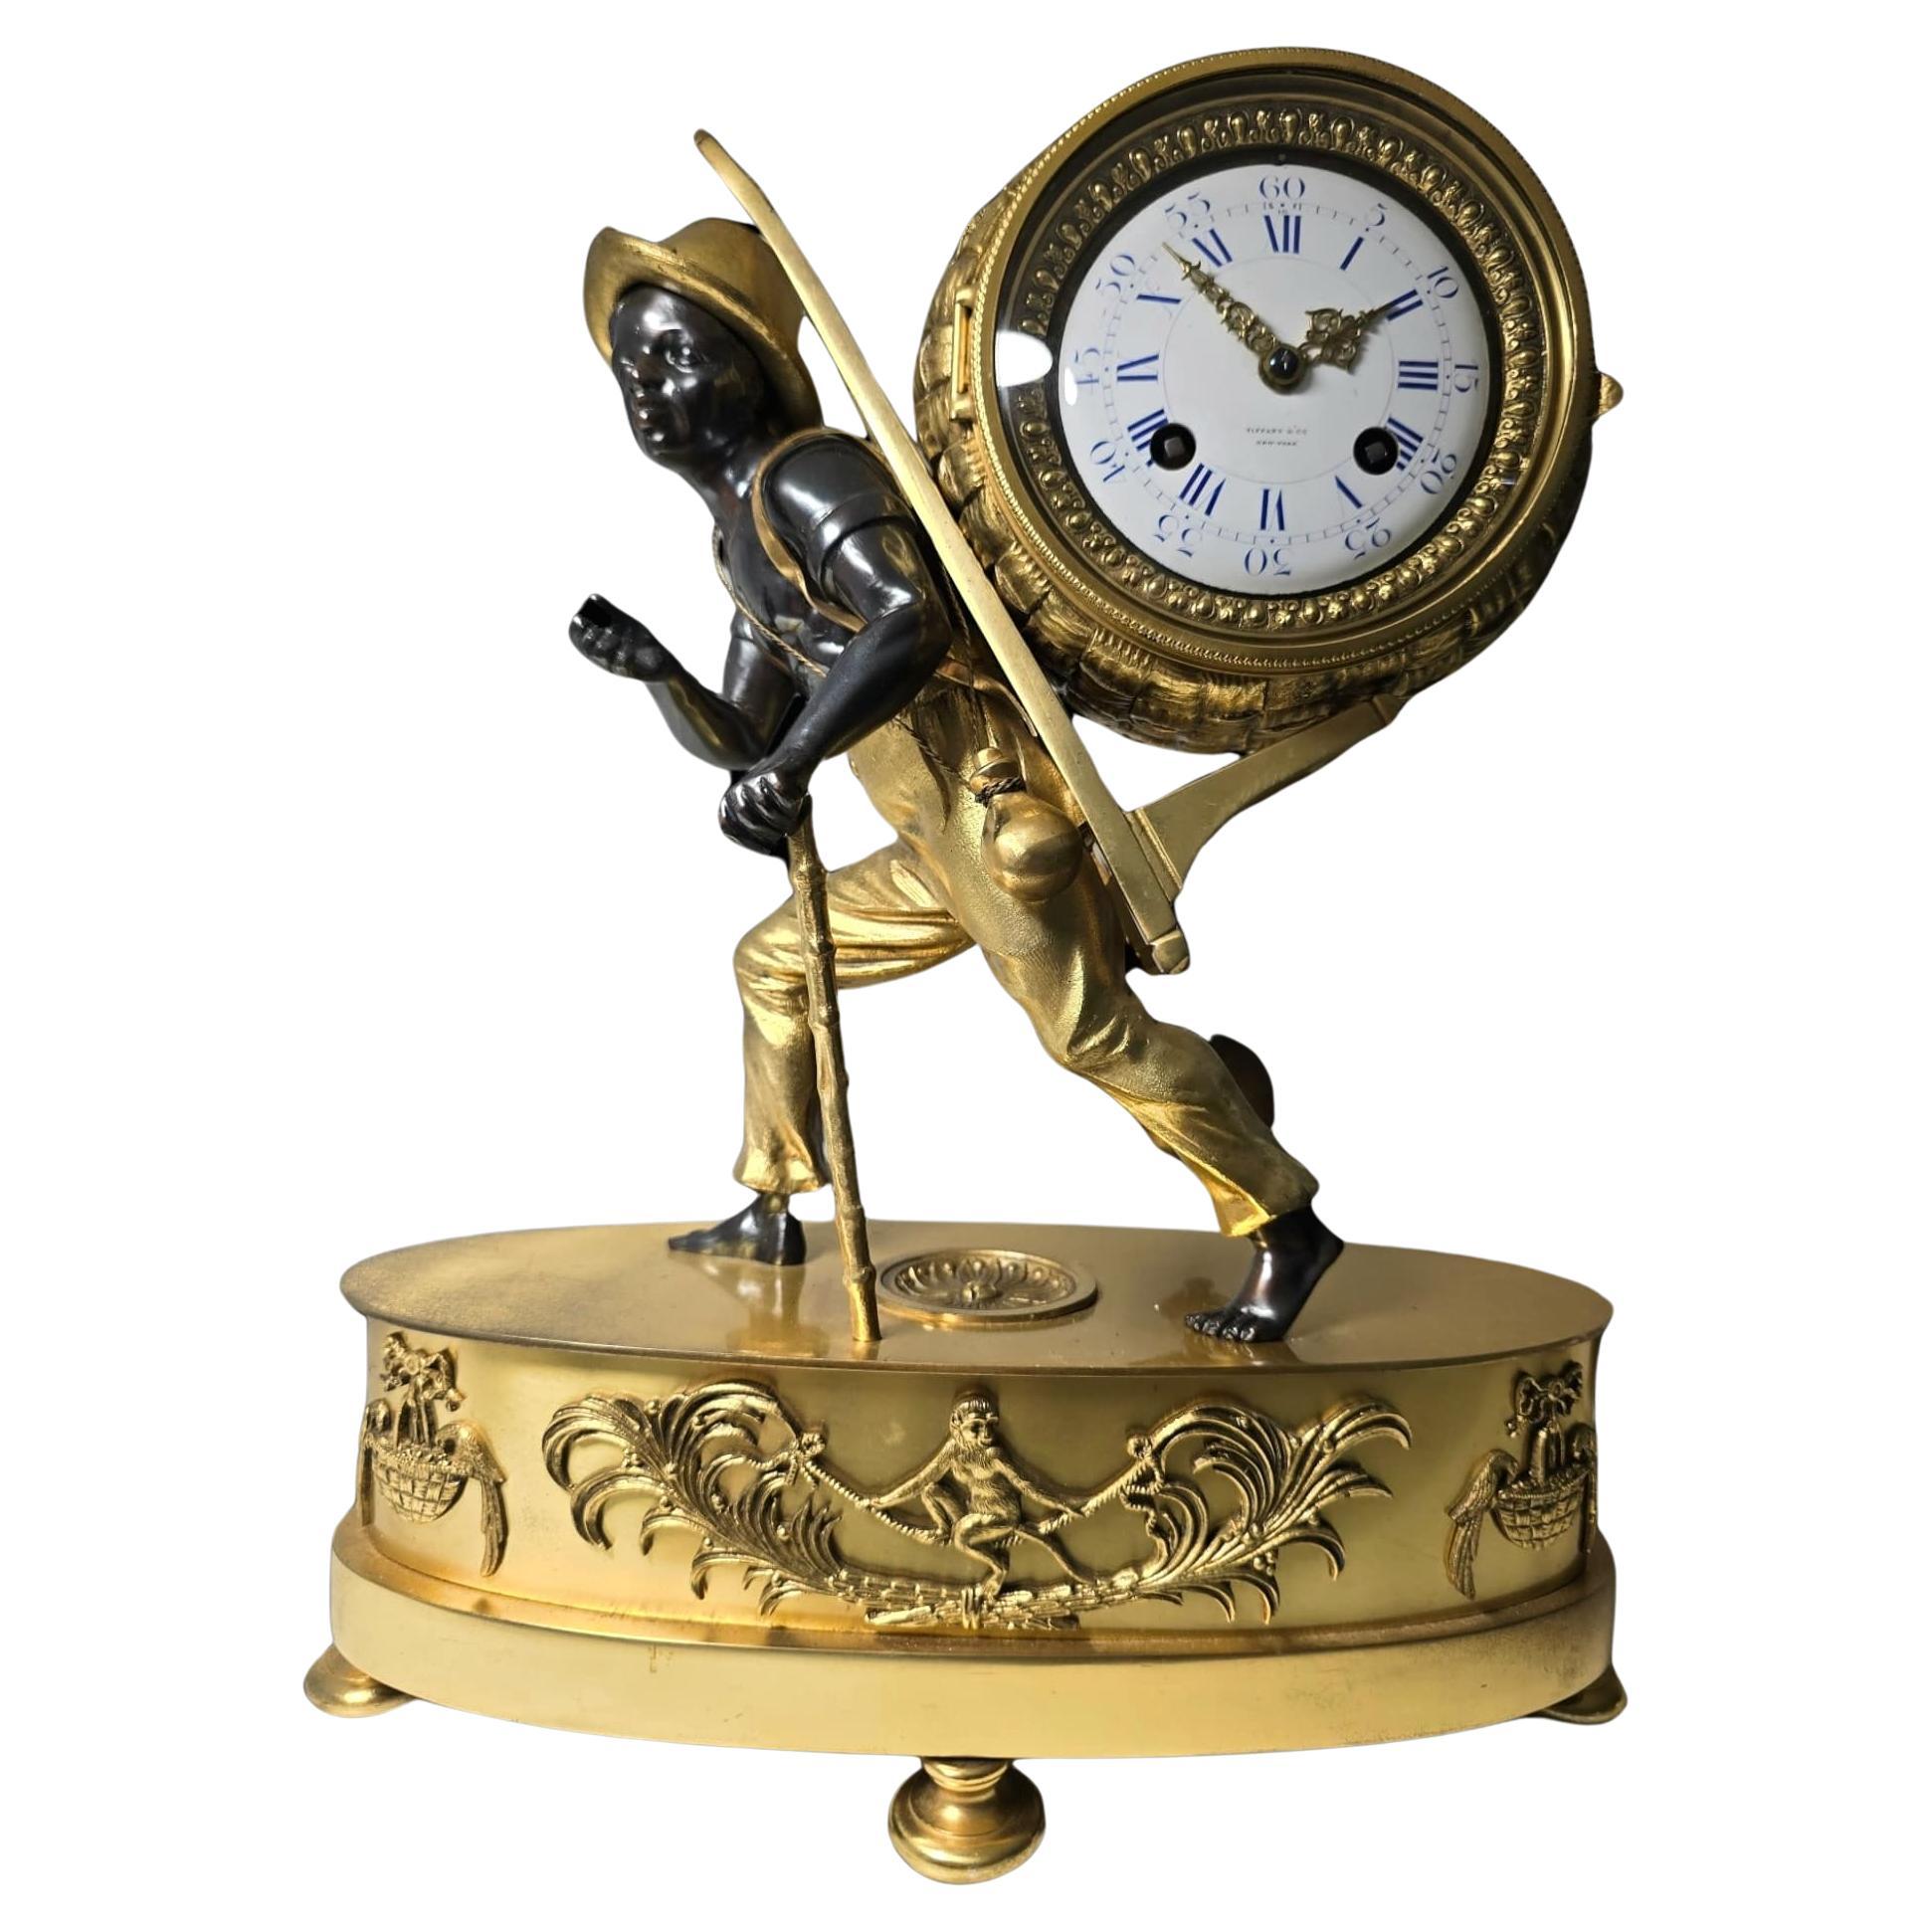 Tiffany&Co Mantel Clock “Le Portefaix” After Design By Jean-André Reiche